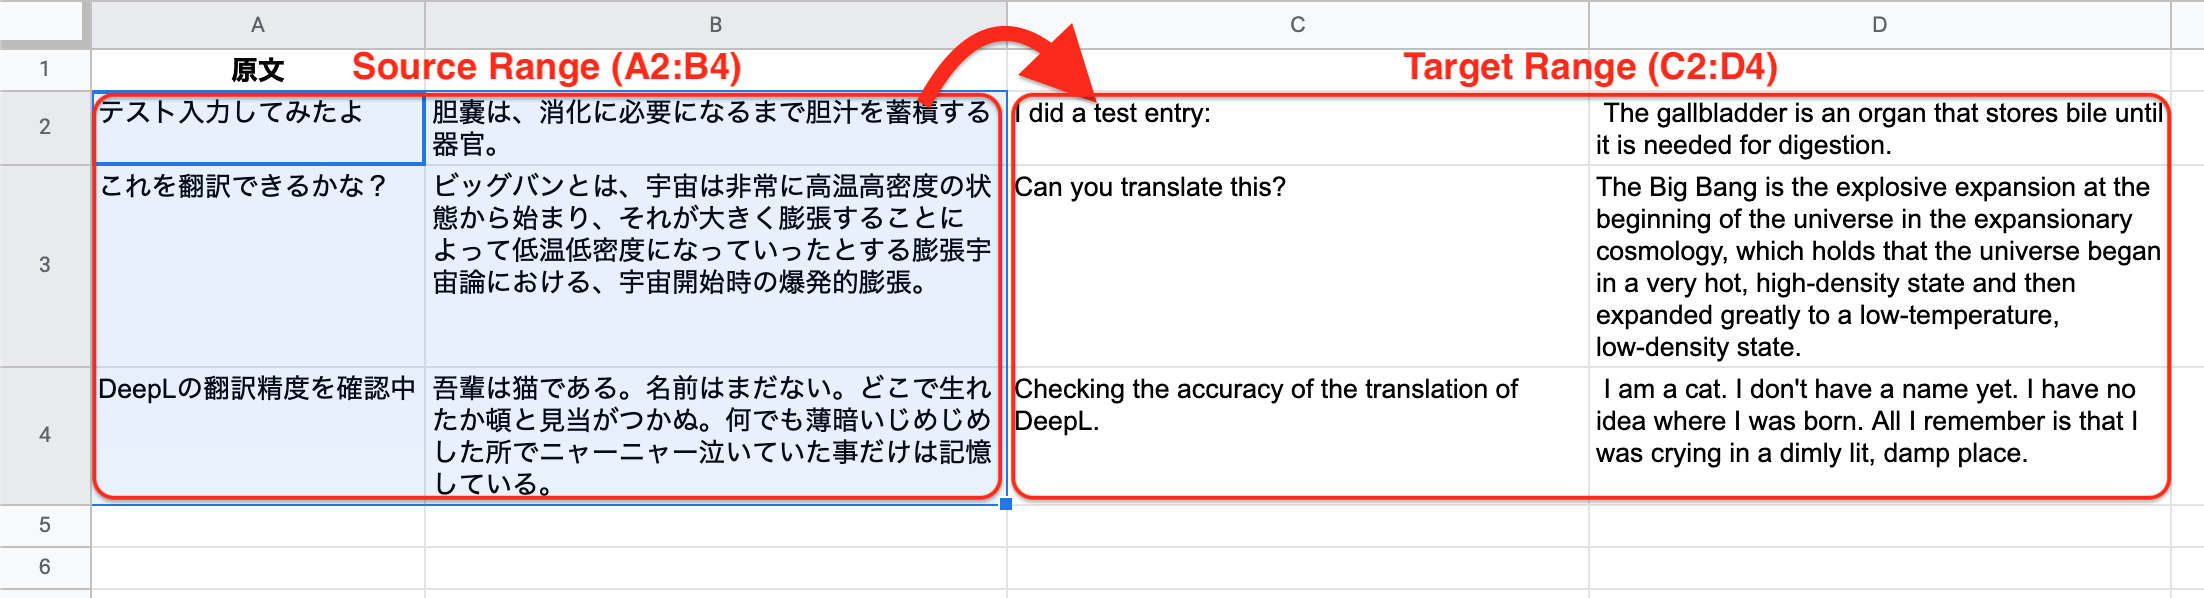 翻訳されたテキストがどのようにスプレッドシート上で表示されるかのスクリーンショット